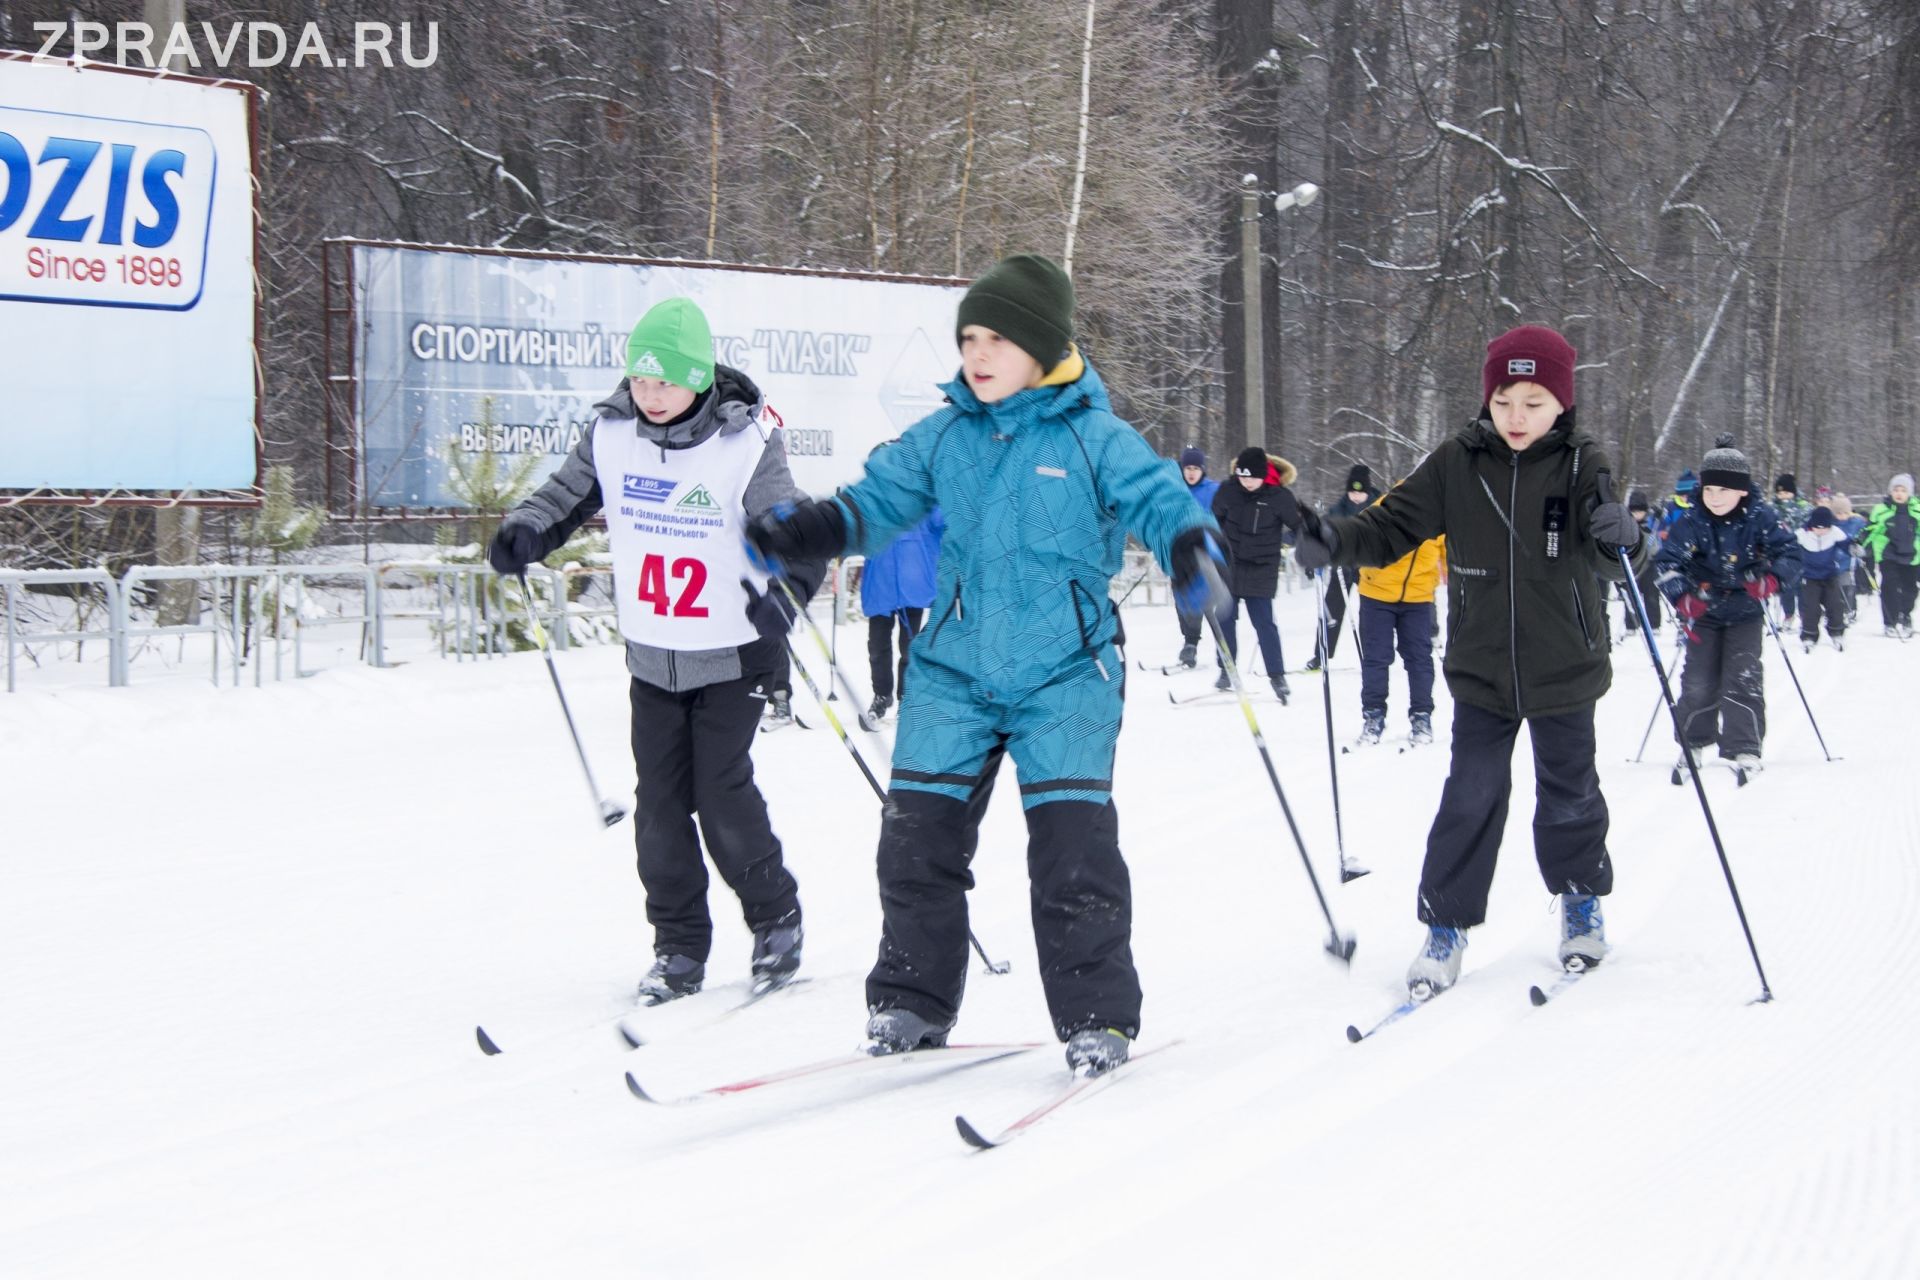 Трассы «Лыжни России» собрали в этом году рекордное количество спортсменов